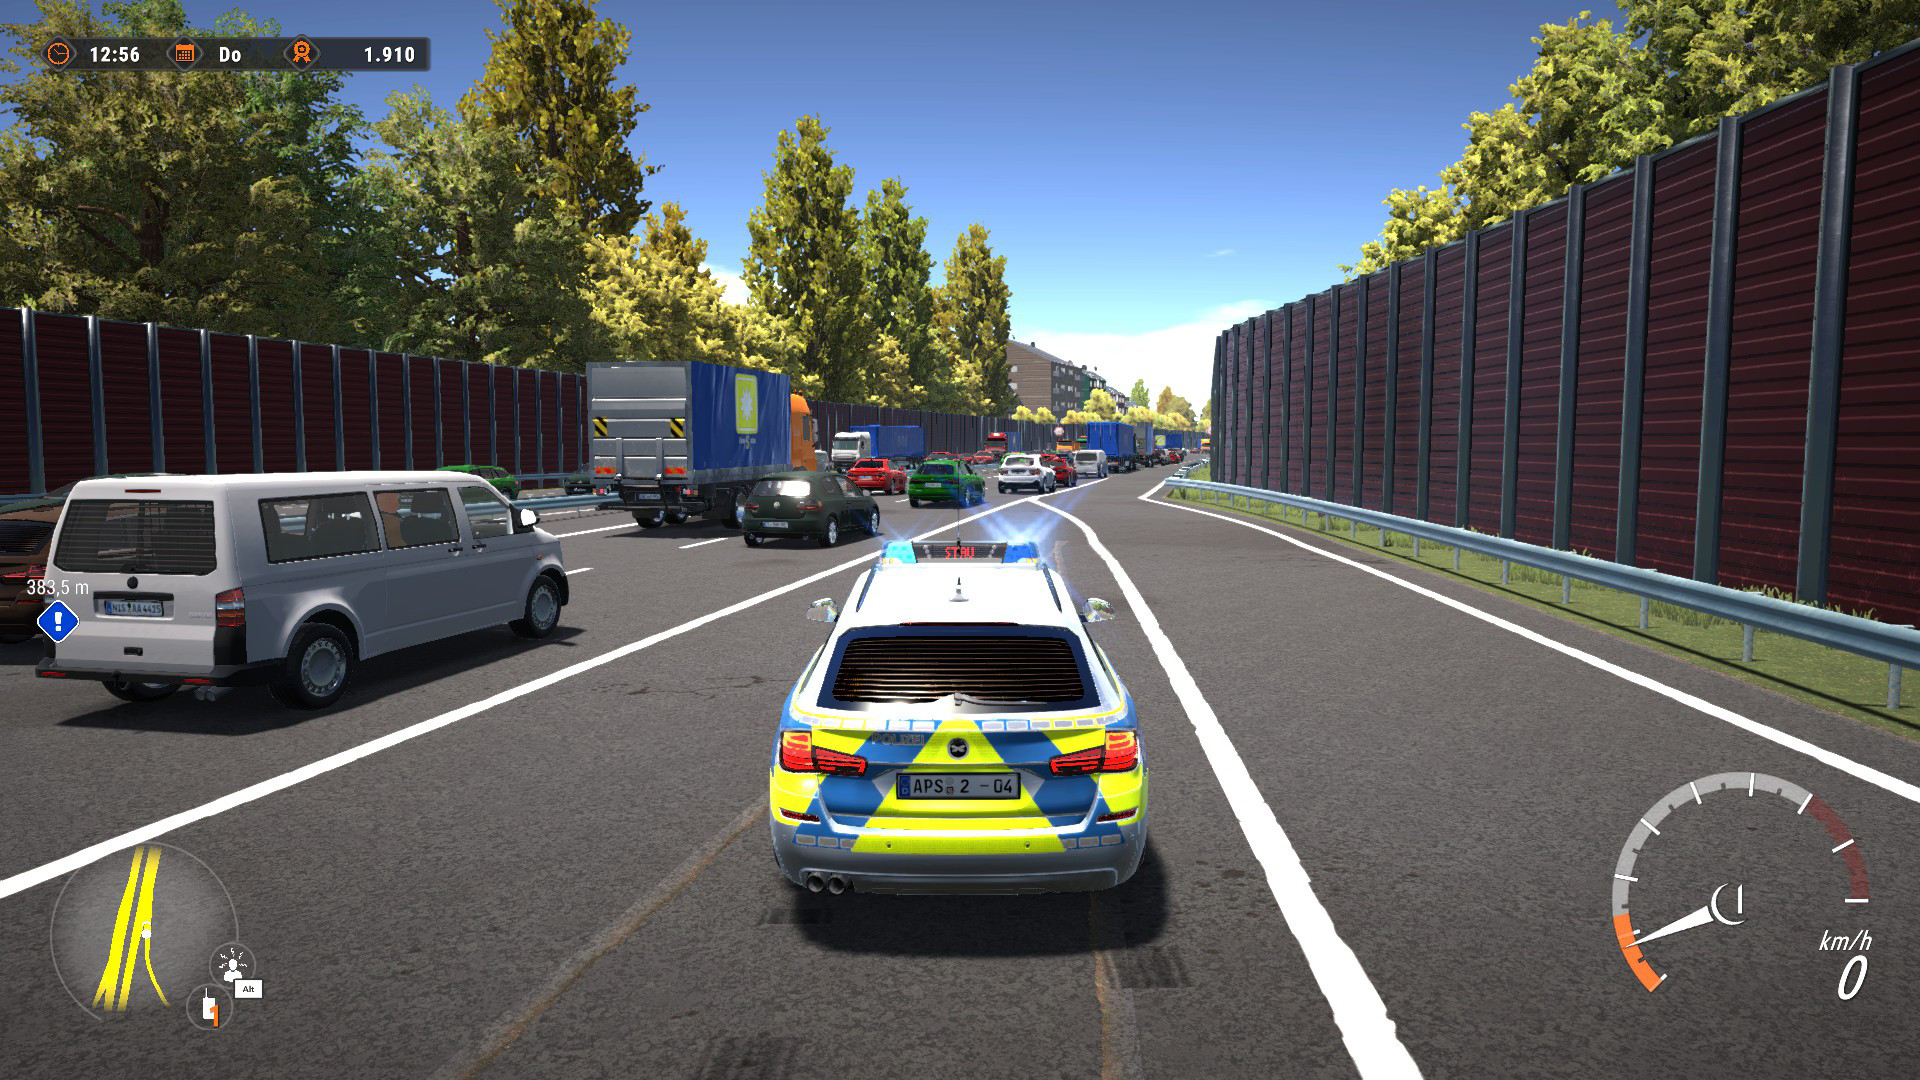 Autobahn Police Simulator 2 on Steam